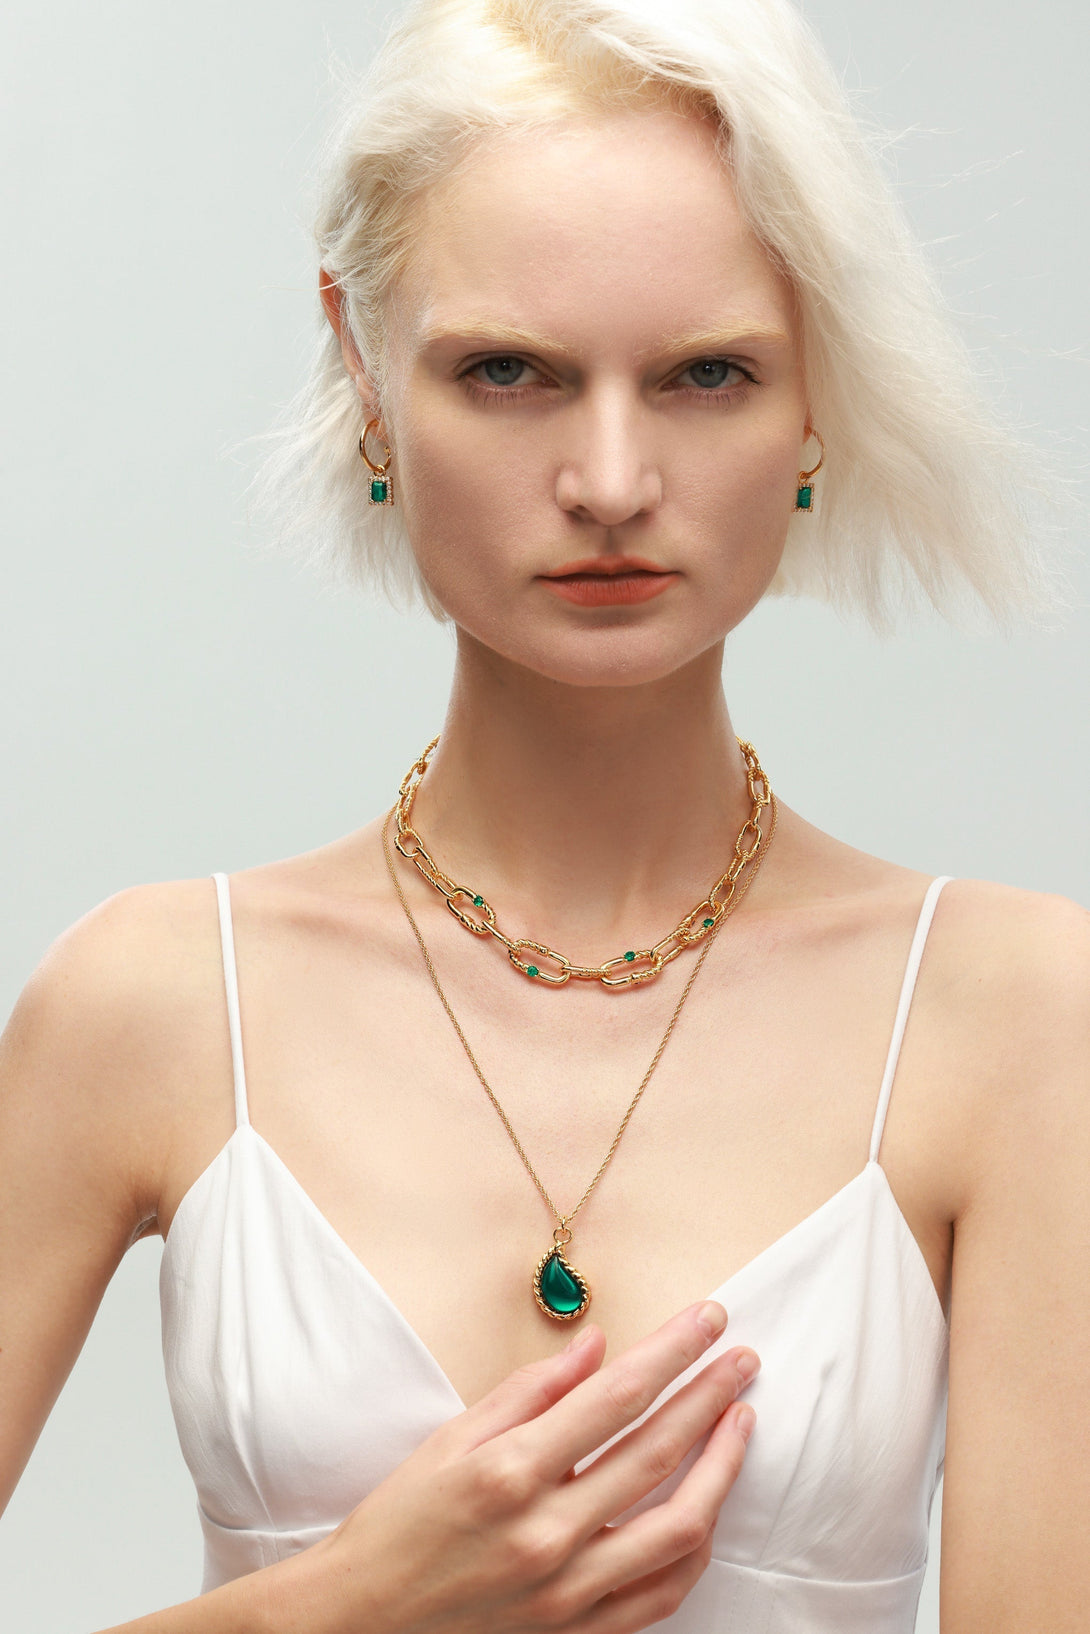 Gold Chain Drop Shape Emerald Pendant Necklace - Classicharms